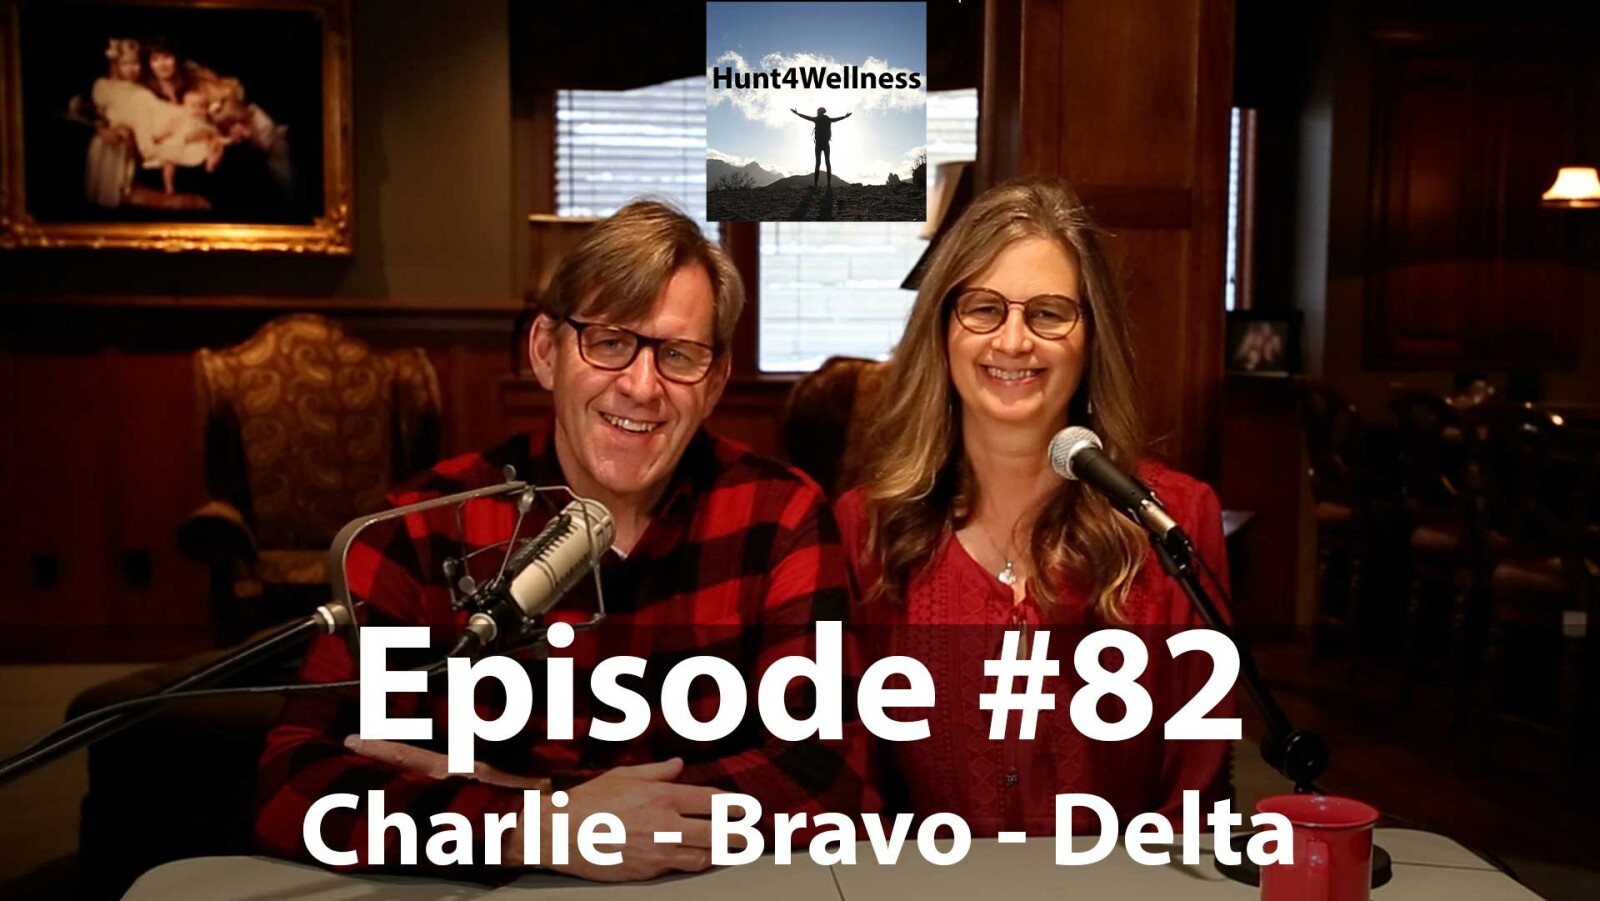 Episode #82 - Charlie - Bravo - Delta!